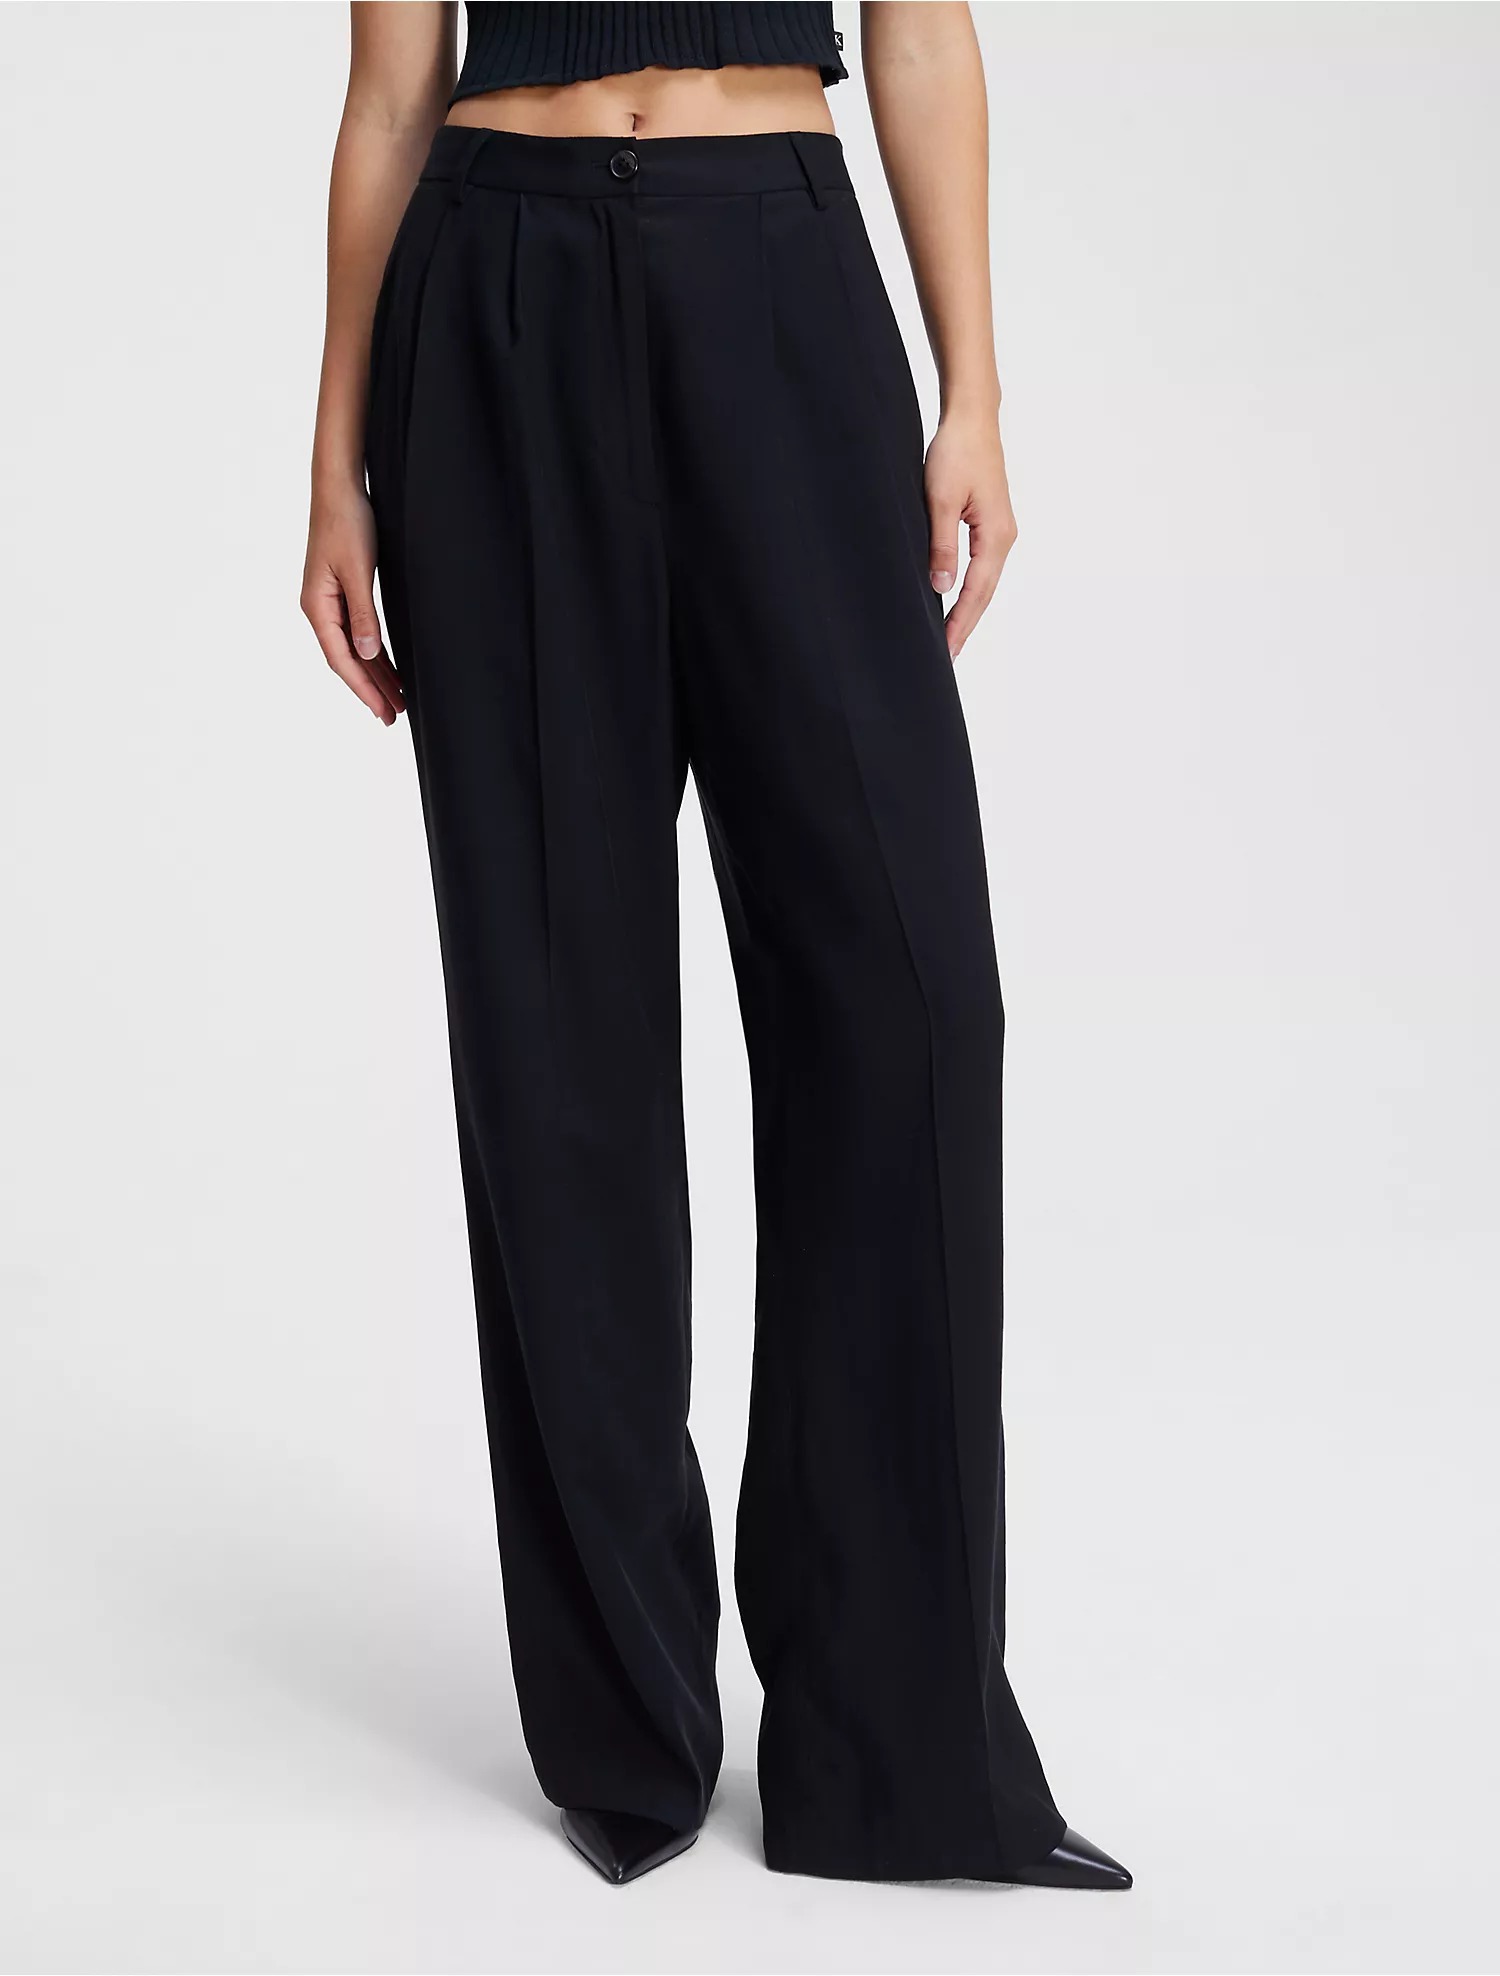 Брюки Calvin Klein Soft Twill Relaxed, черный брюки женские хлопково льняные свободного кроя повседневные штаны с завышенной талией и широкими штанинами модные брюки оверсайз до щико